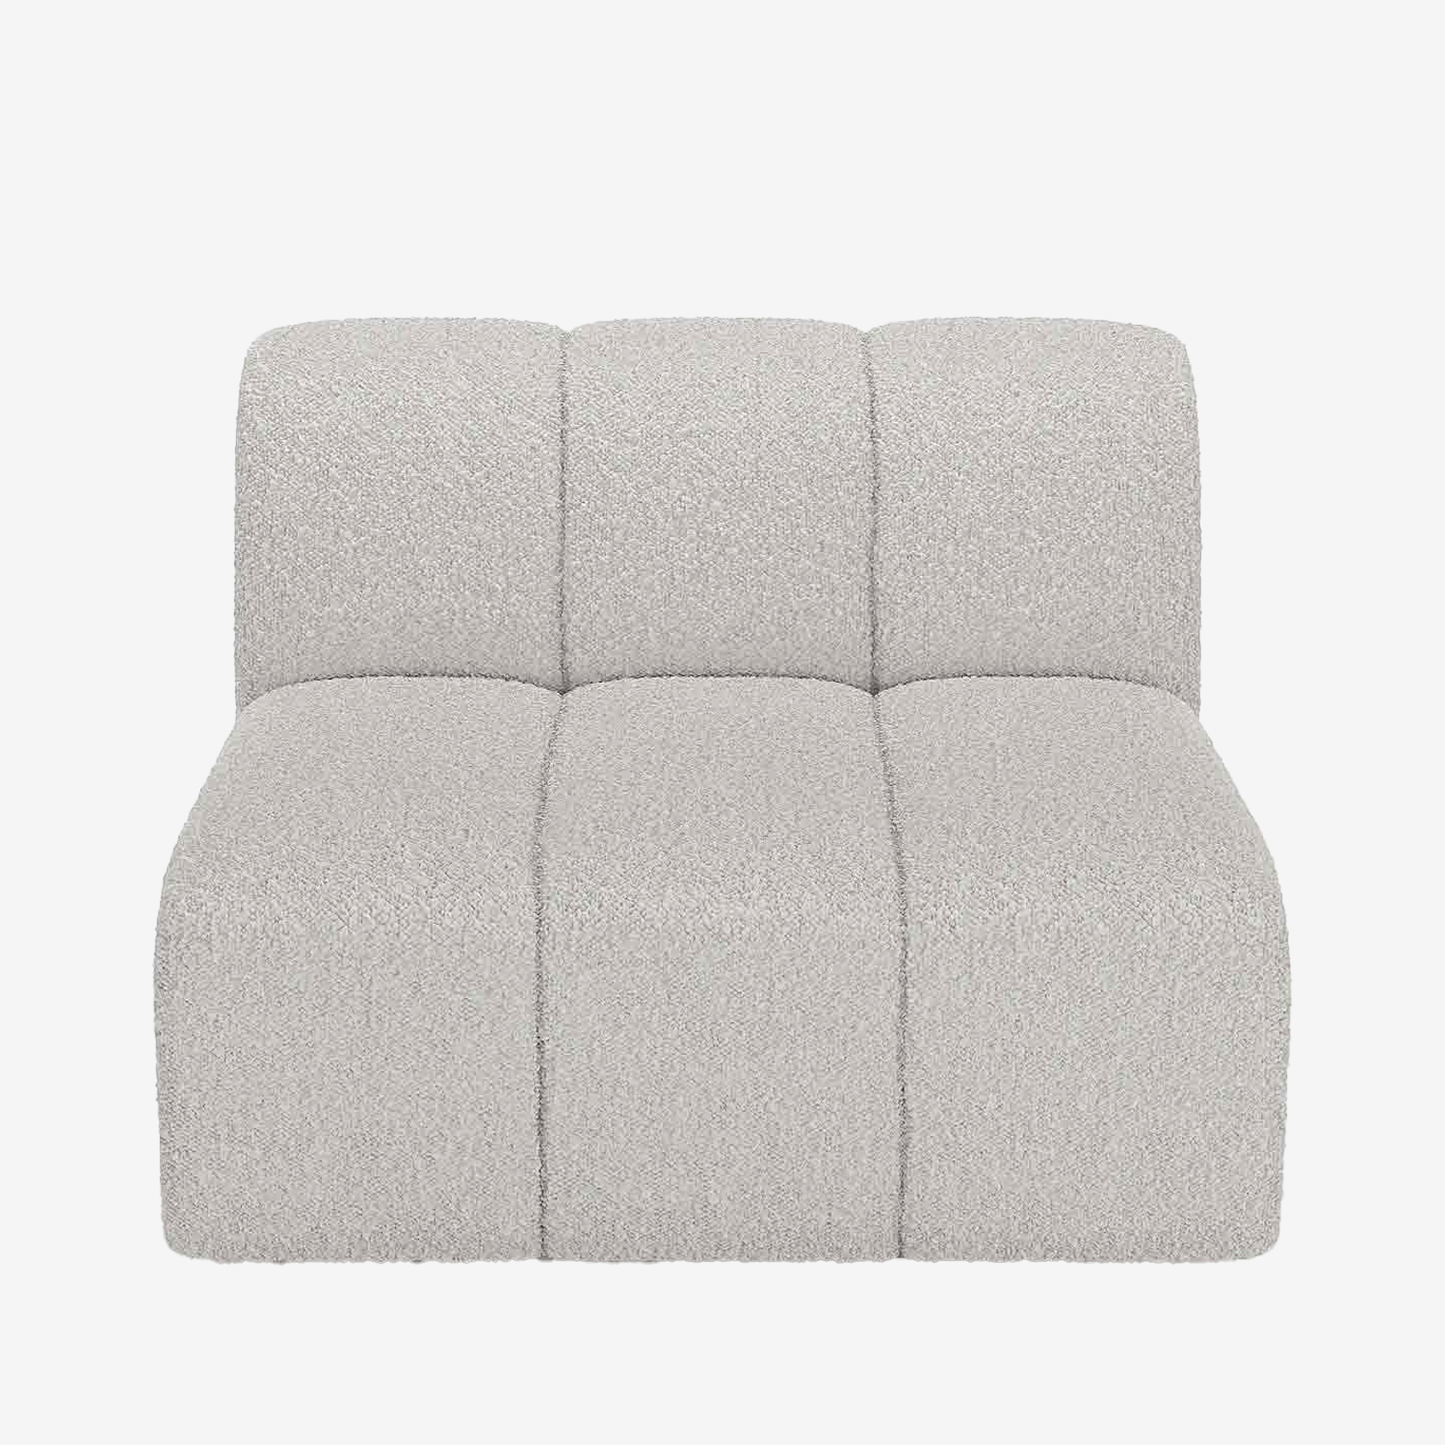 Mini canapé ou chauffeuse pour canapé modulable en tissu bouclette grise : c'est vous qui composez le meilleur canapé sur notre boutique de meubles et déco en ligne